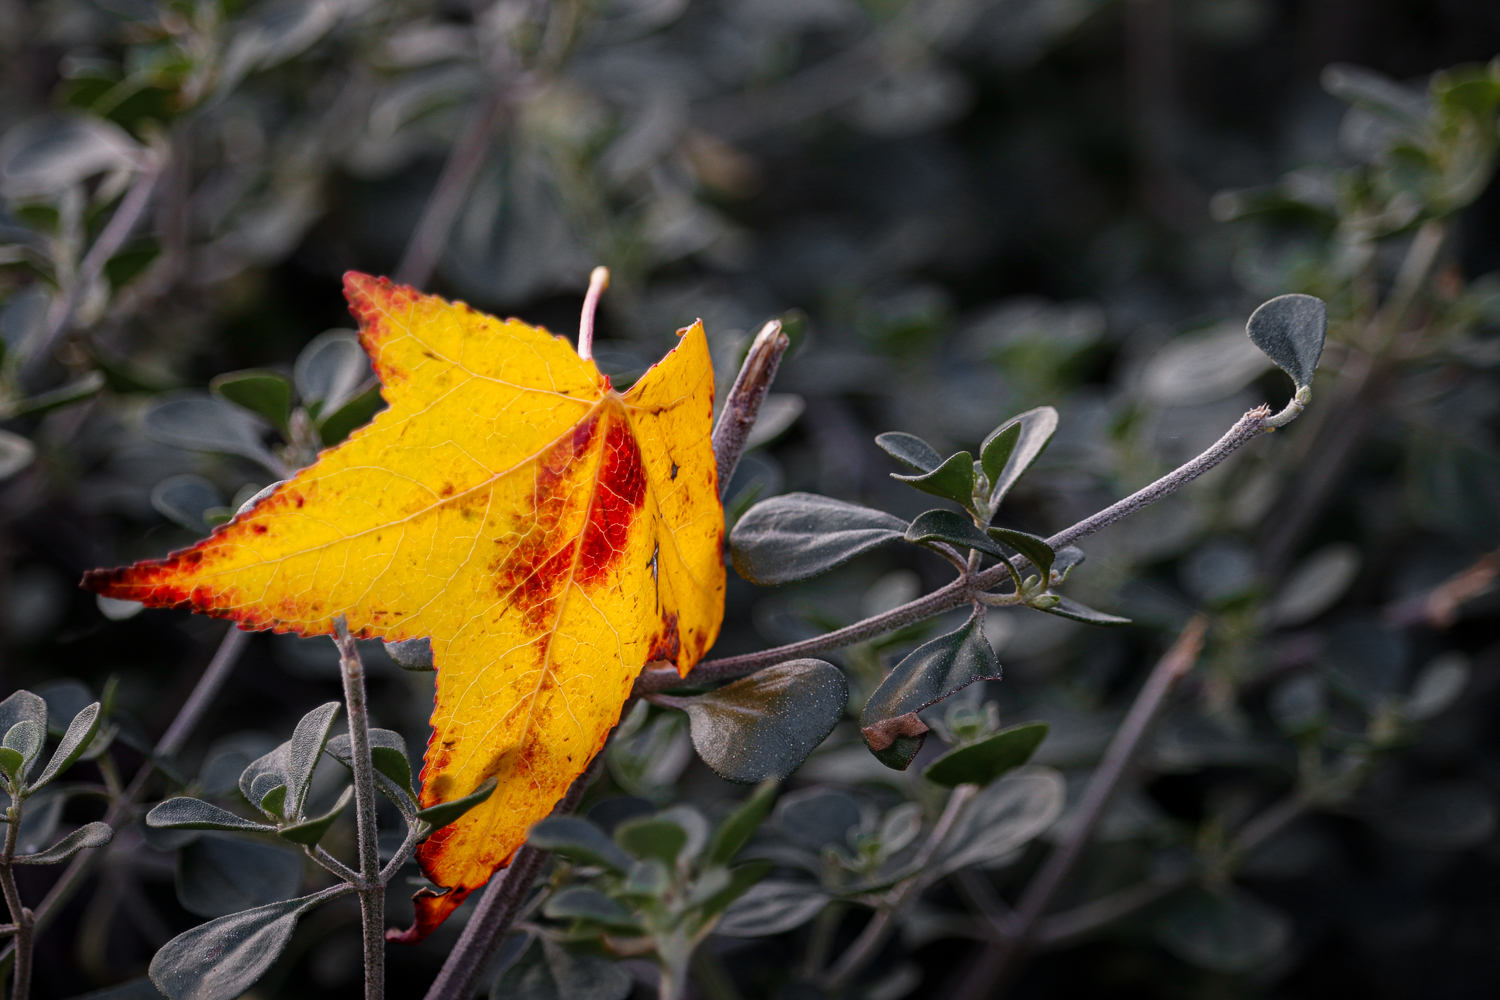 A single yellow autumn leaf resting on a dark green shrub